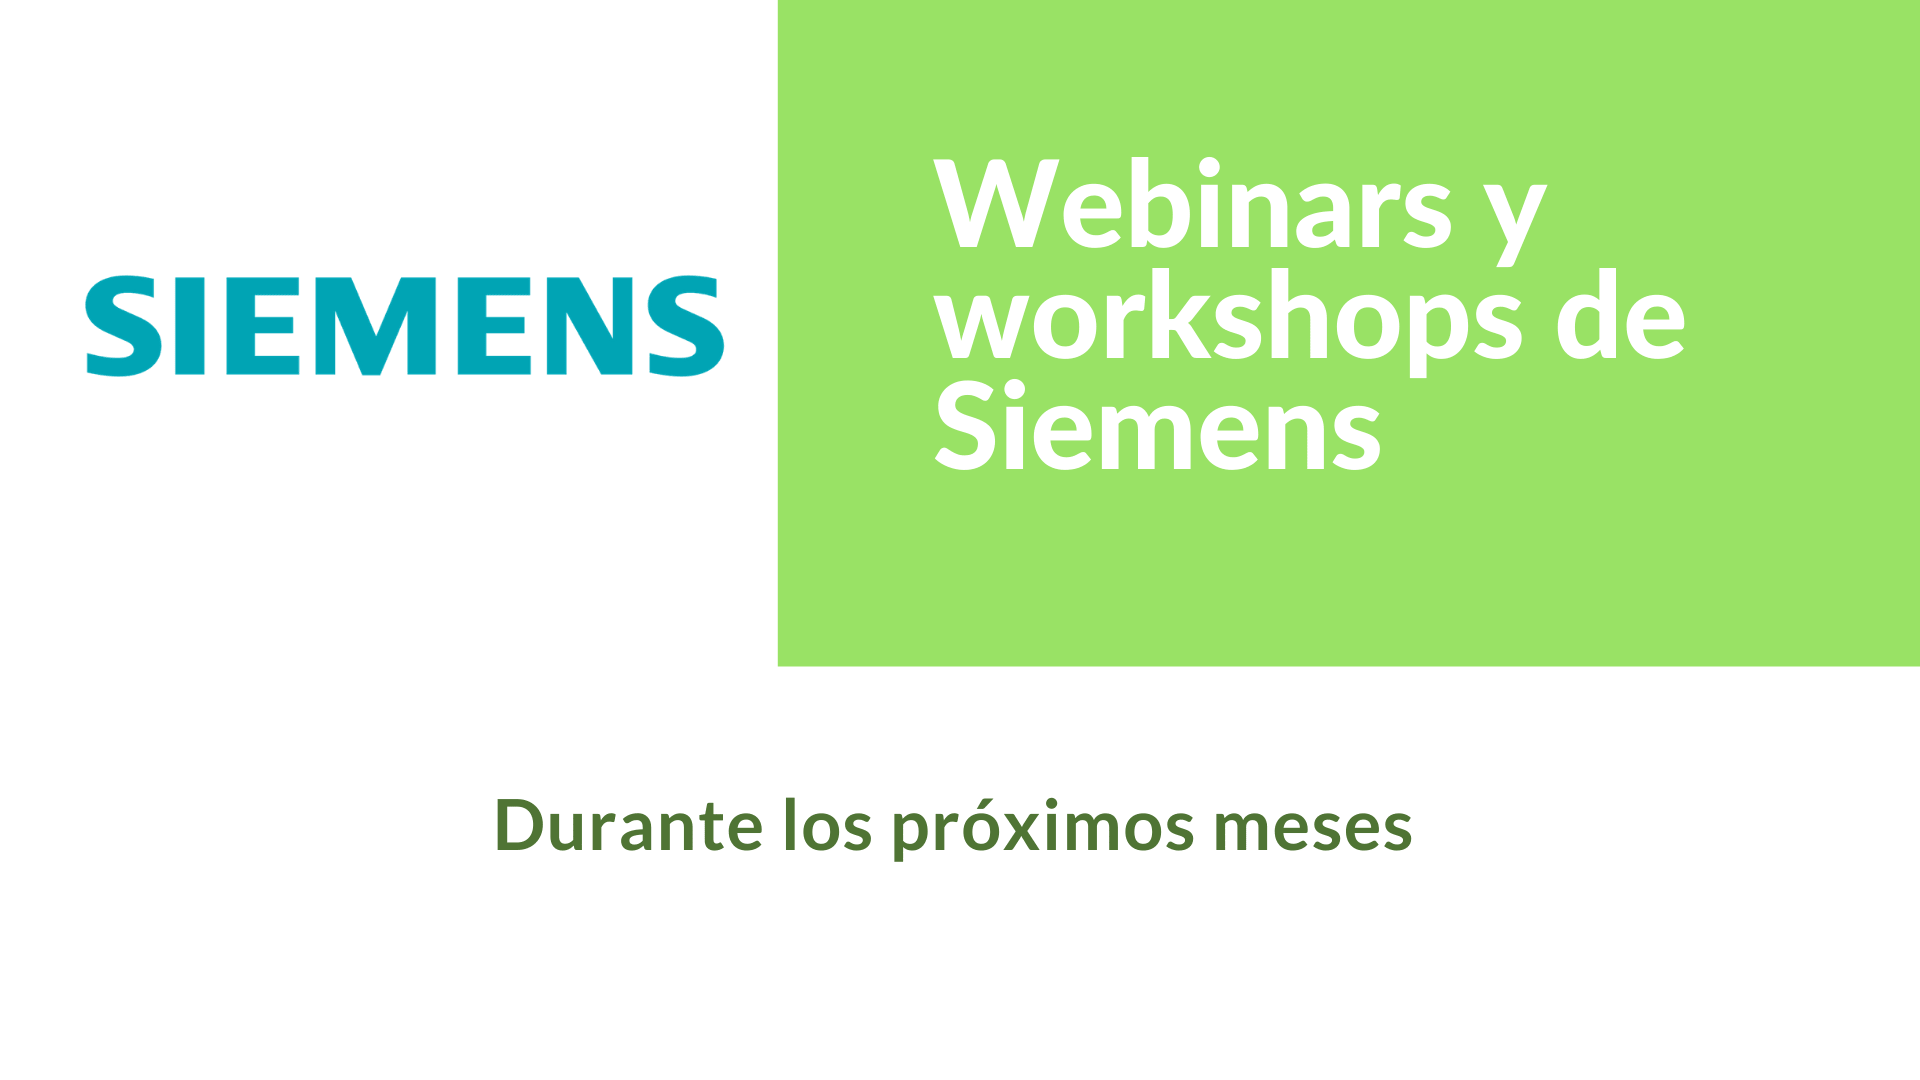 Webinars y workshops de Siemens en el primer semestre de 2020